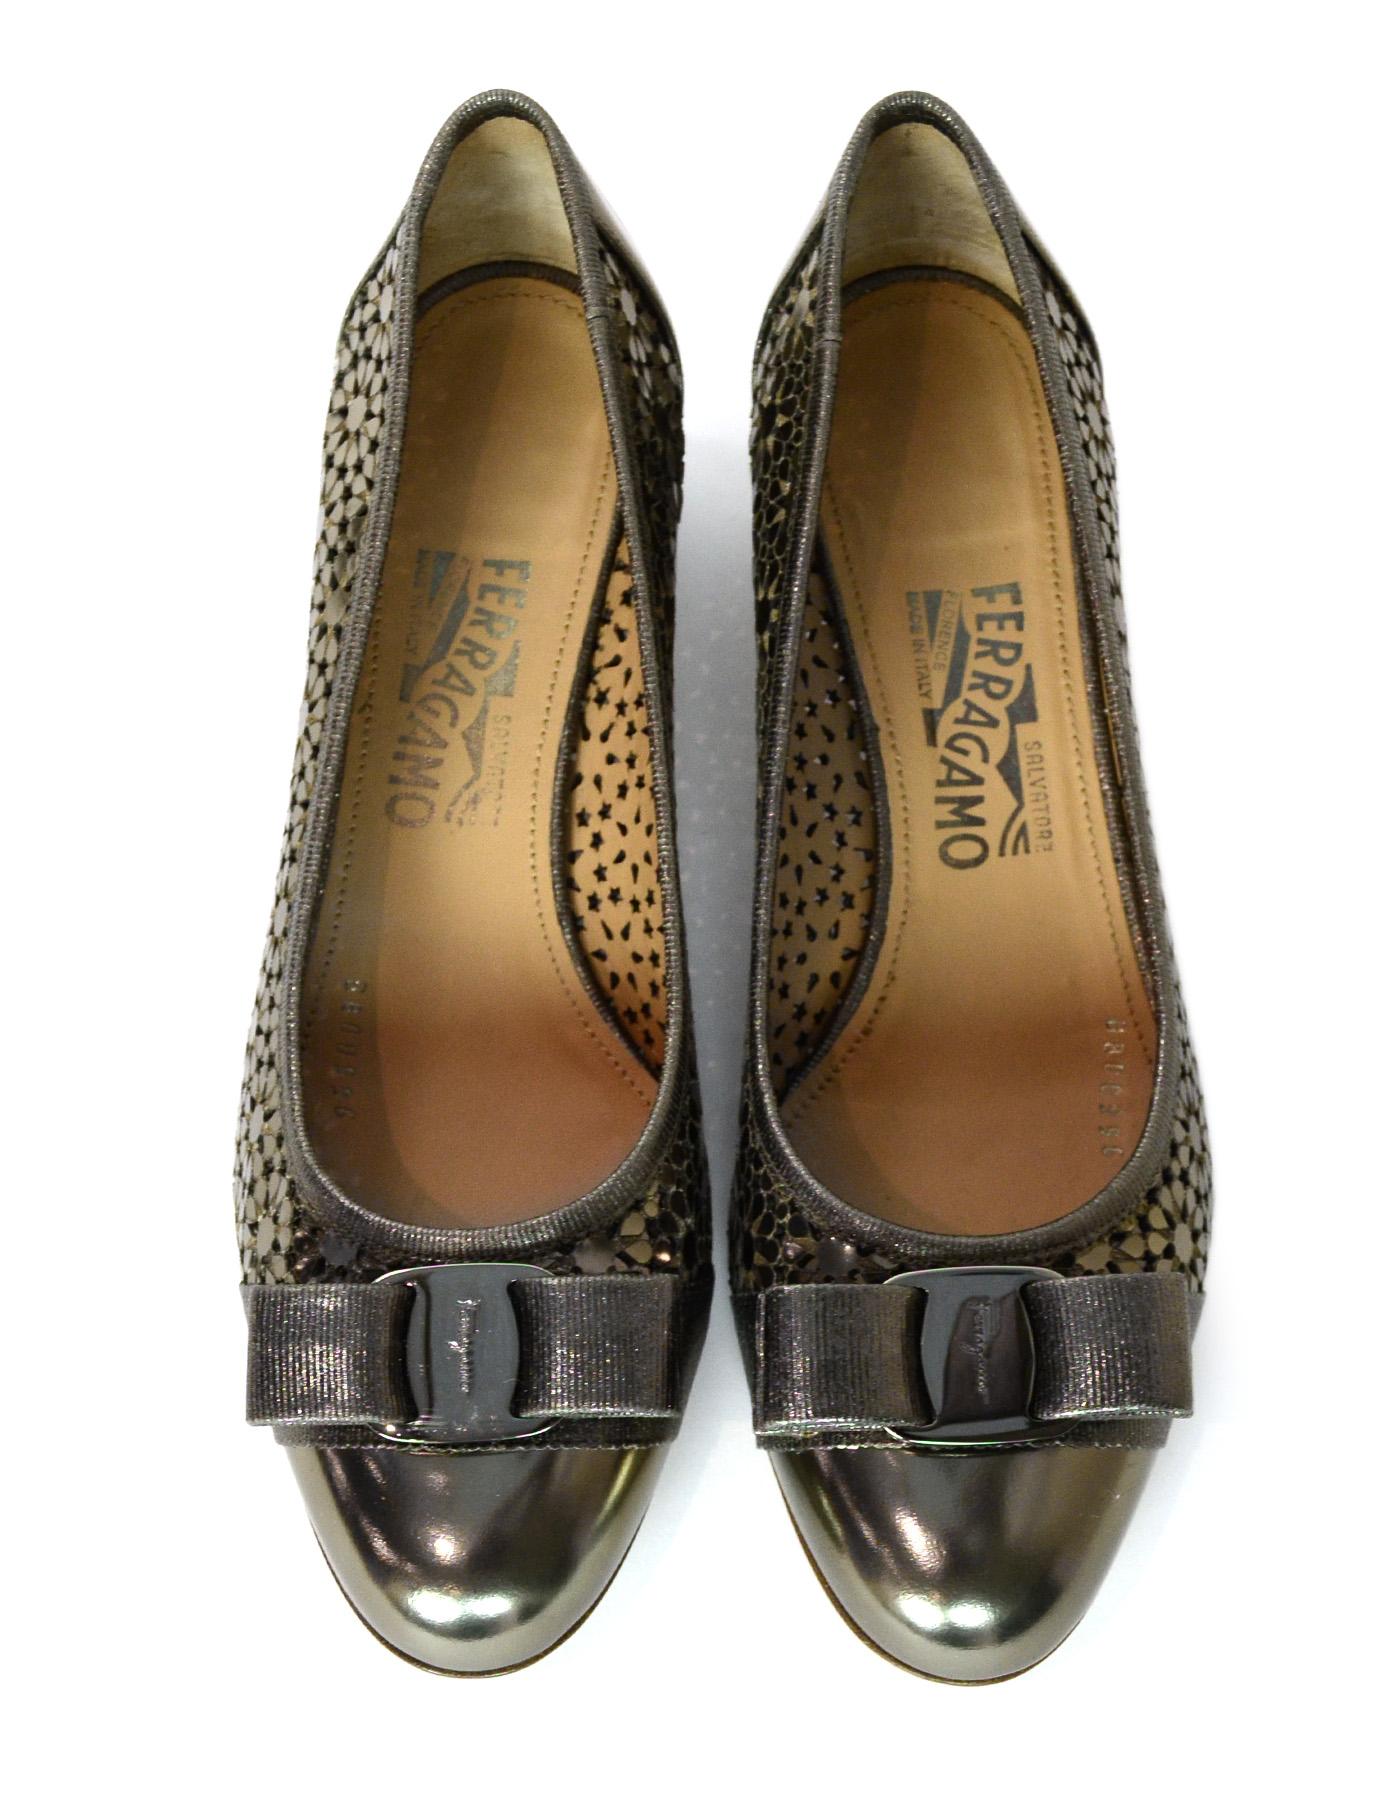 Women's Salvatore Ferragamo Bronze Leather Laser Cut Out Side Cap Toe Shoes W/ Bow Sz 9C